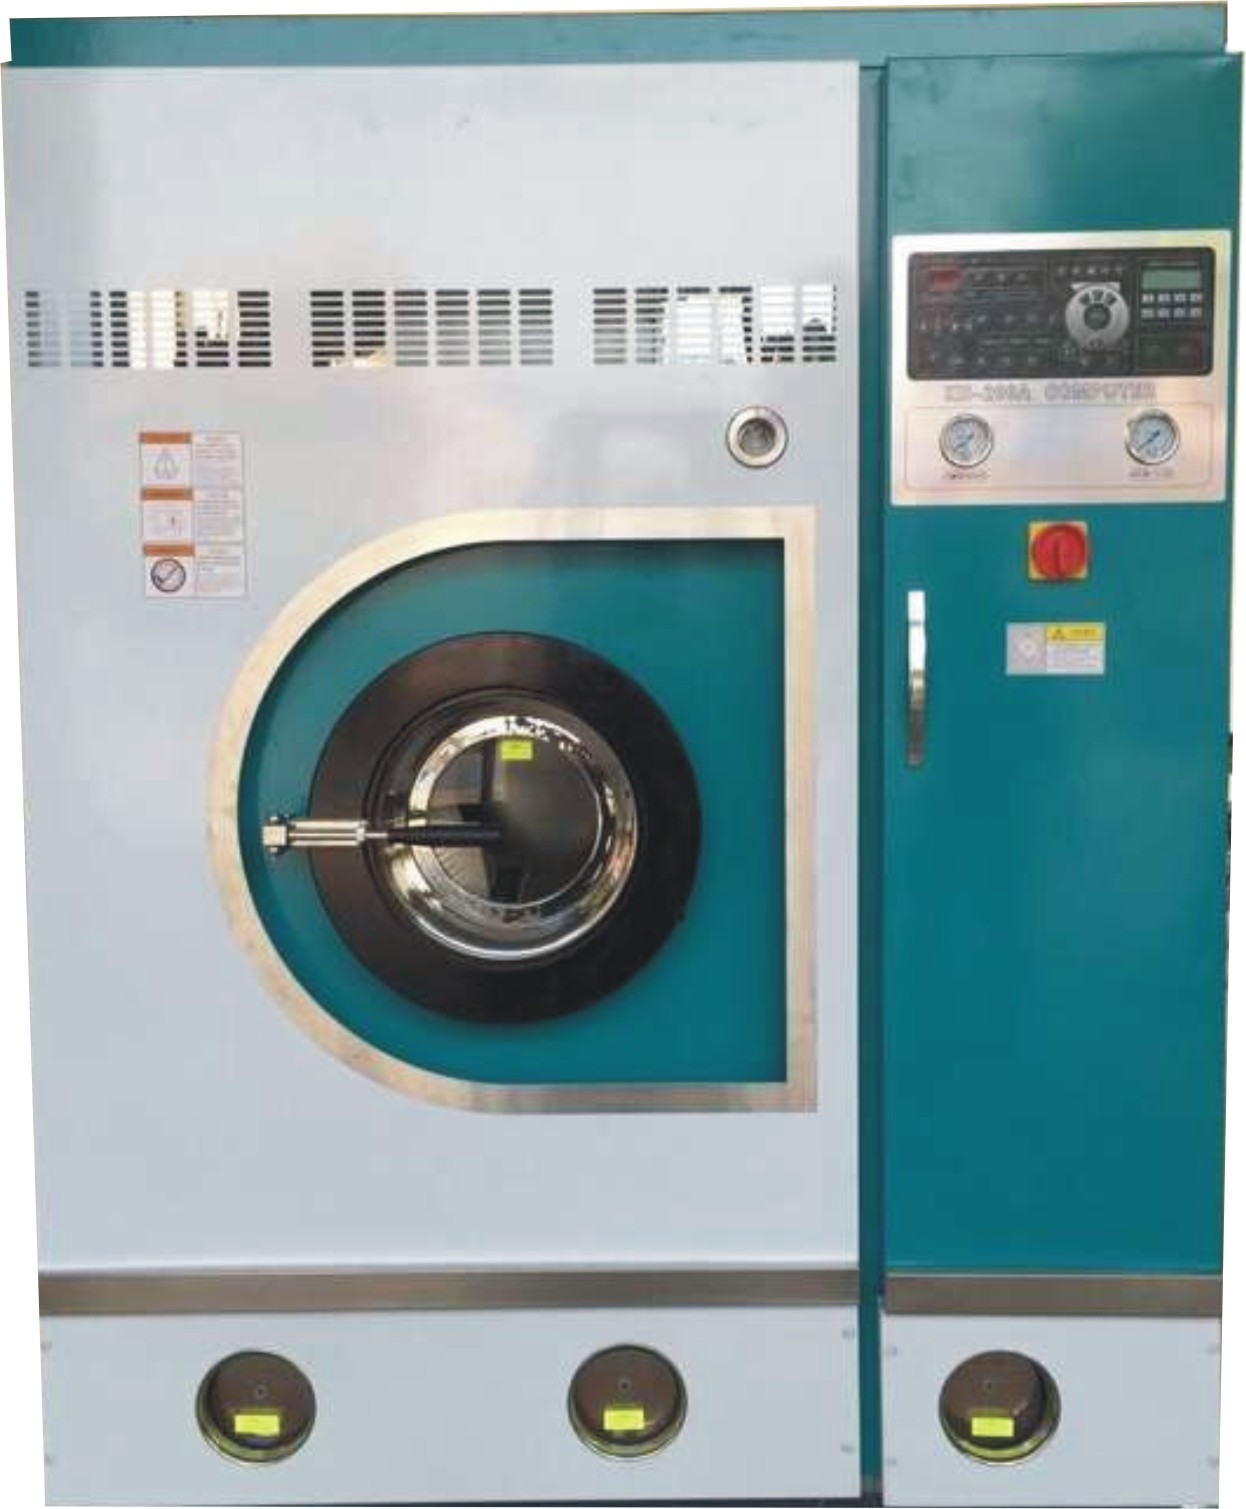 柳州哪里有卖水洗机选择好洁品牌服务最好